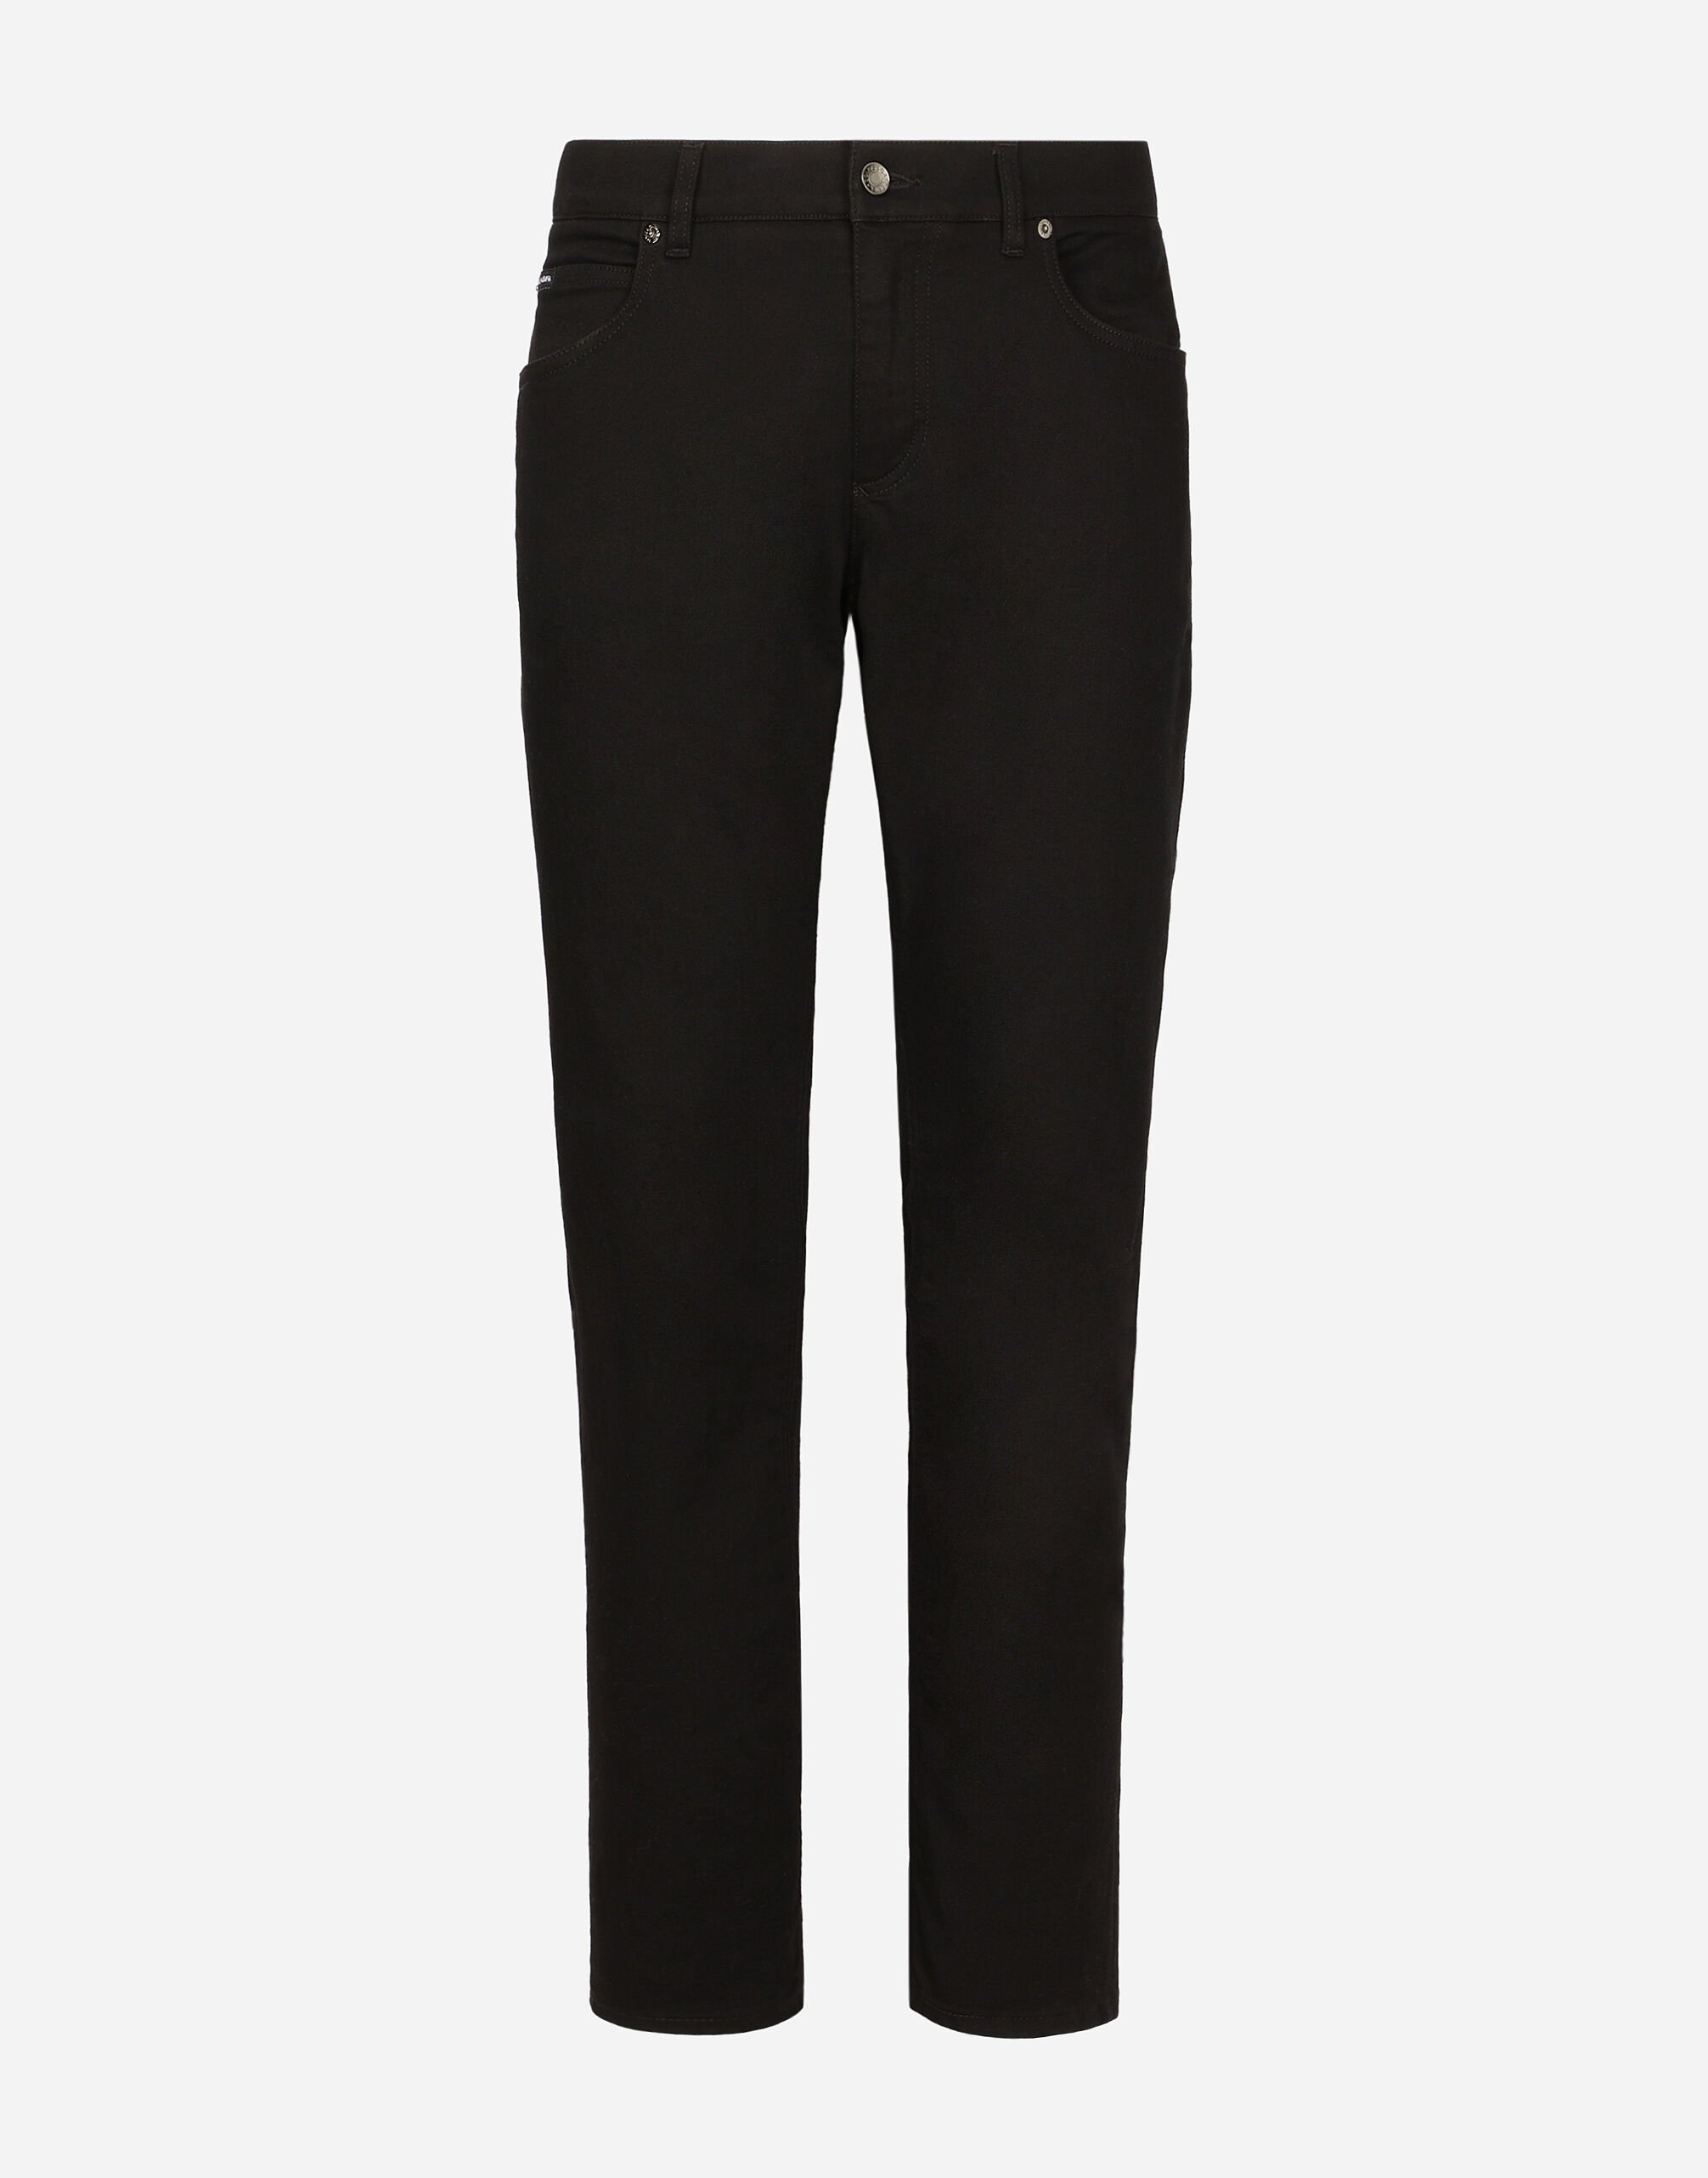 Dolce & Gabbana جينز مرن مغسول أسود بقصة عادية متعدد الألوان G9NL5DG8GW9